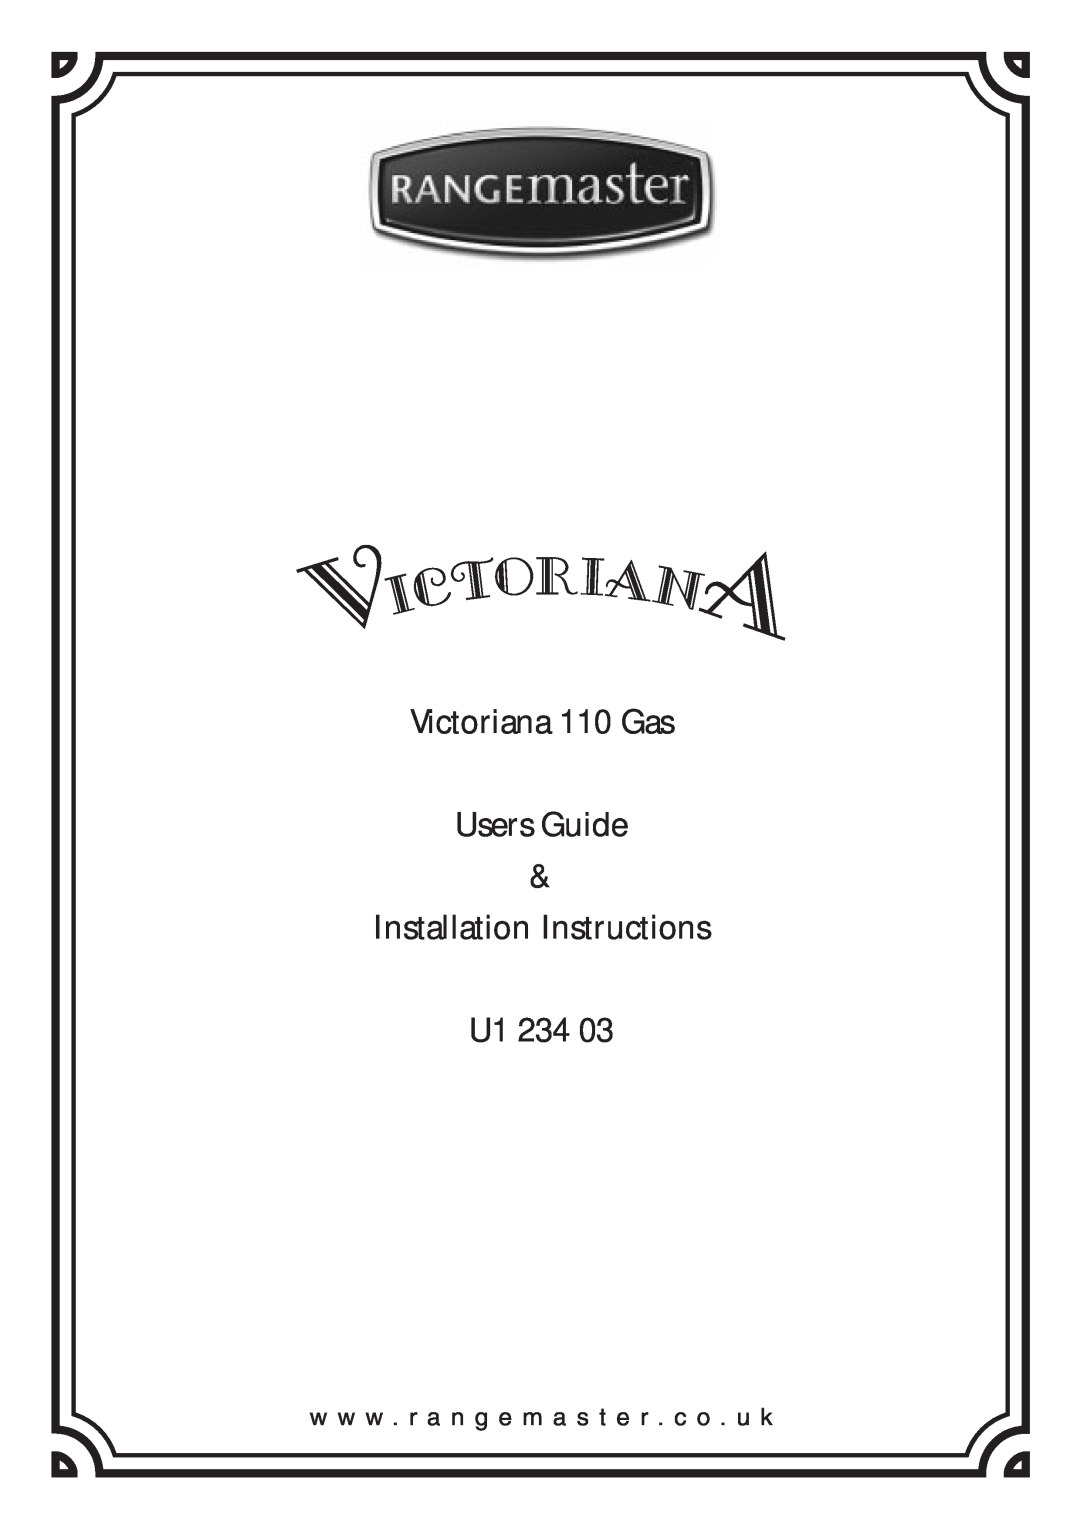 Rangemaster installation instructions Victoriana 110 Gas Users Guide, Installation Instructions U1 